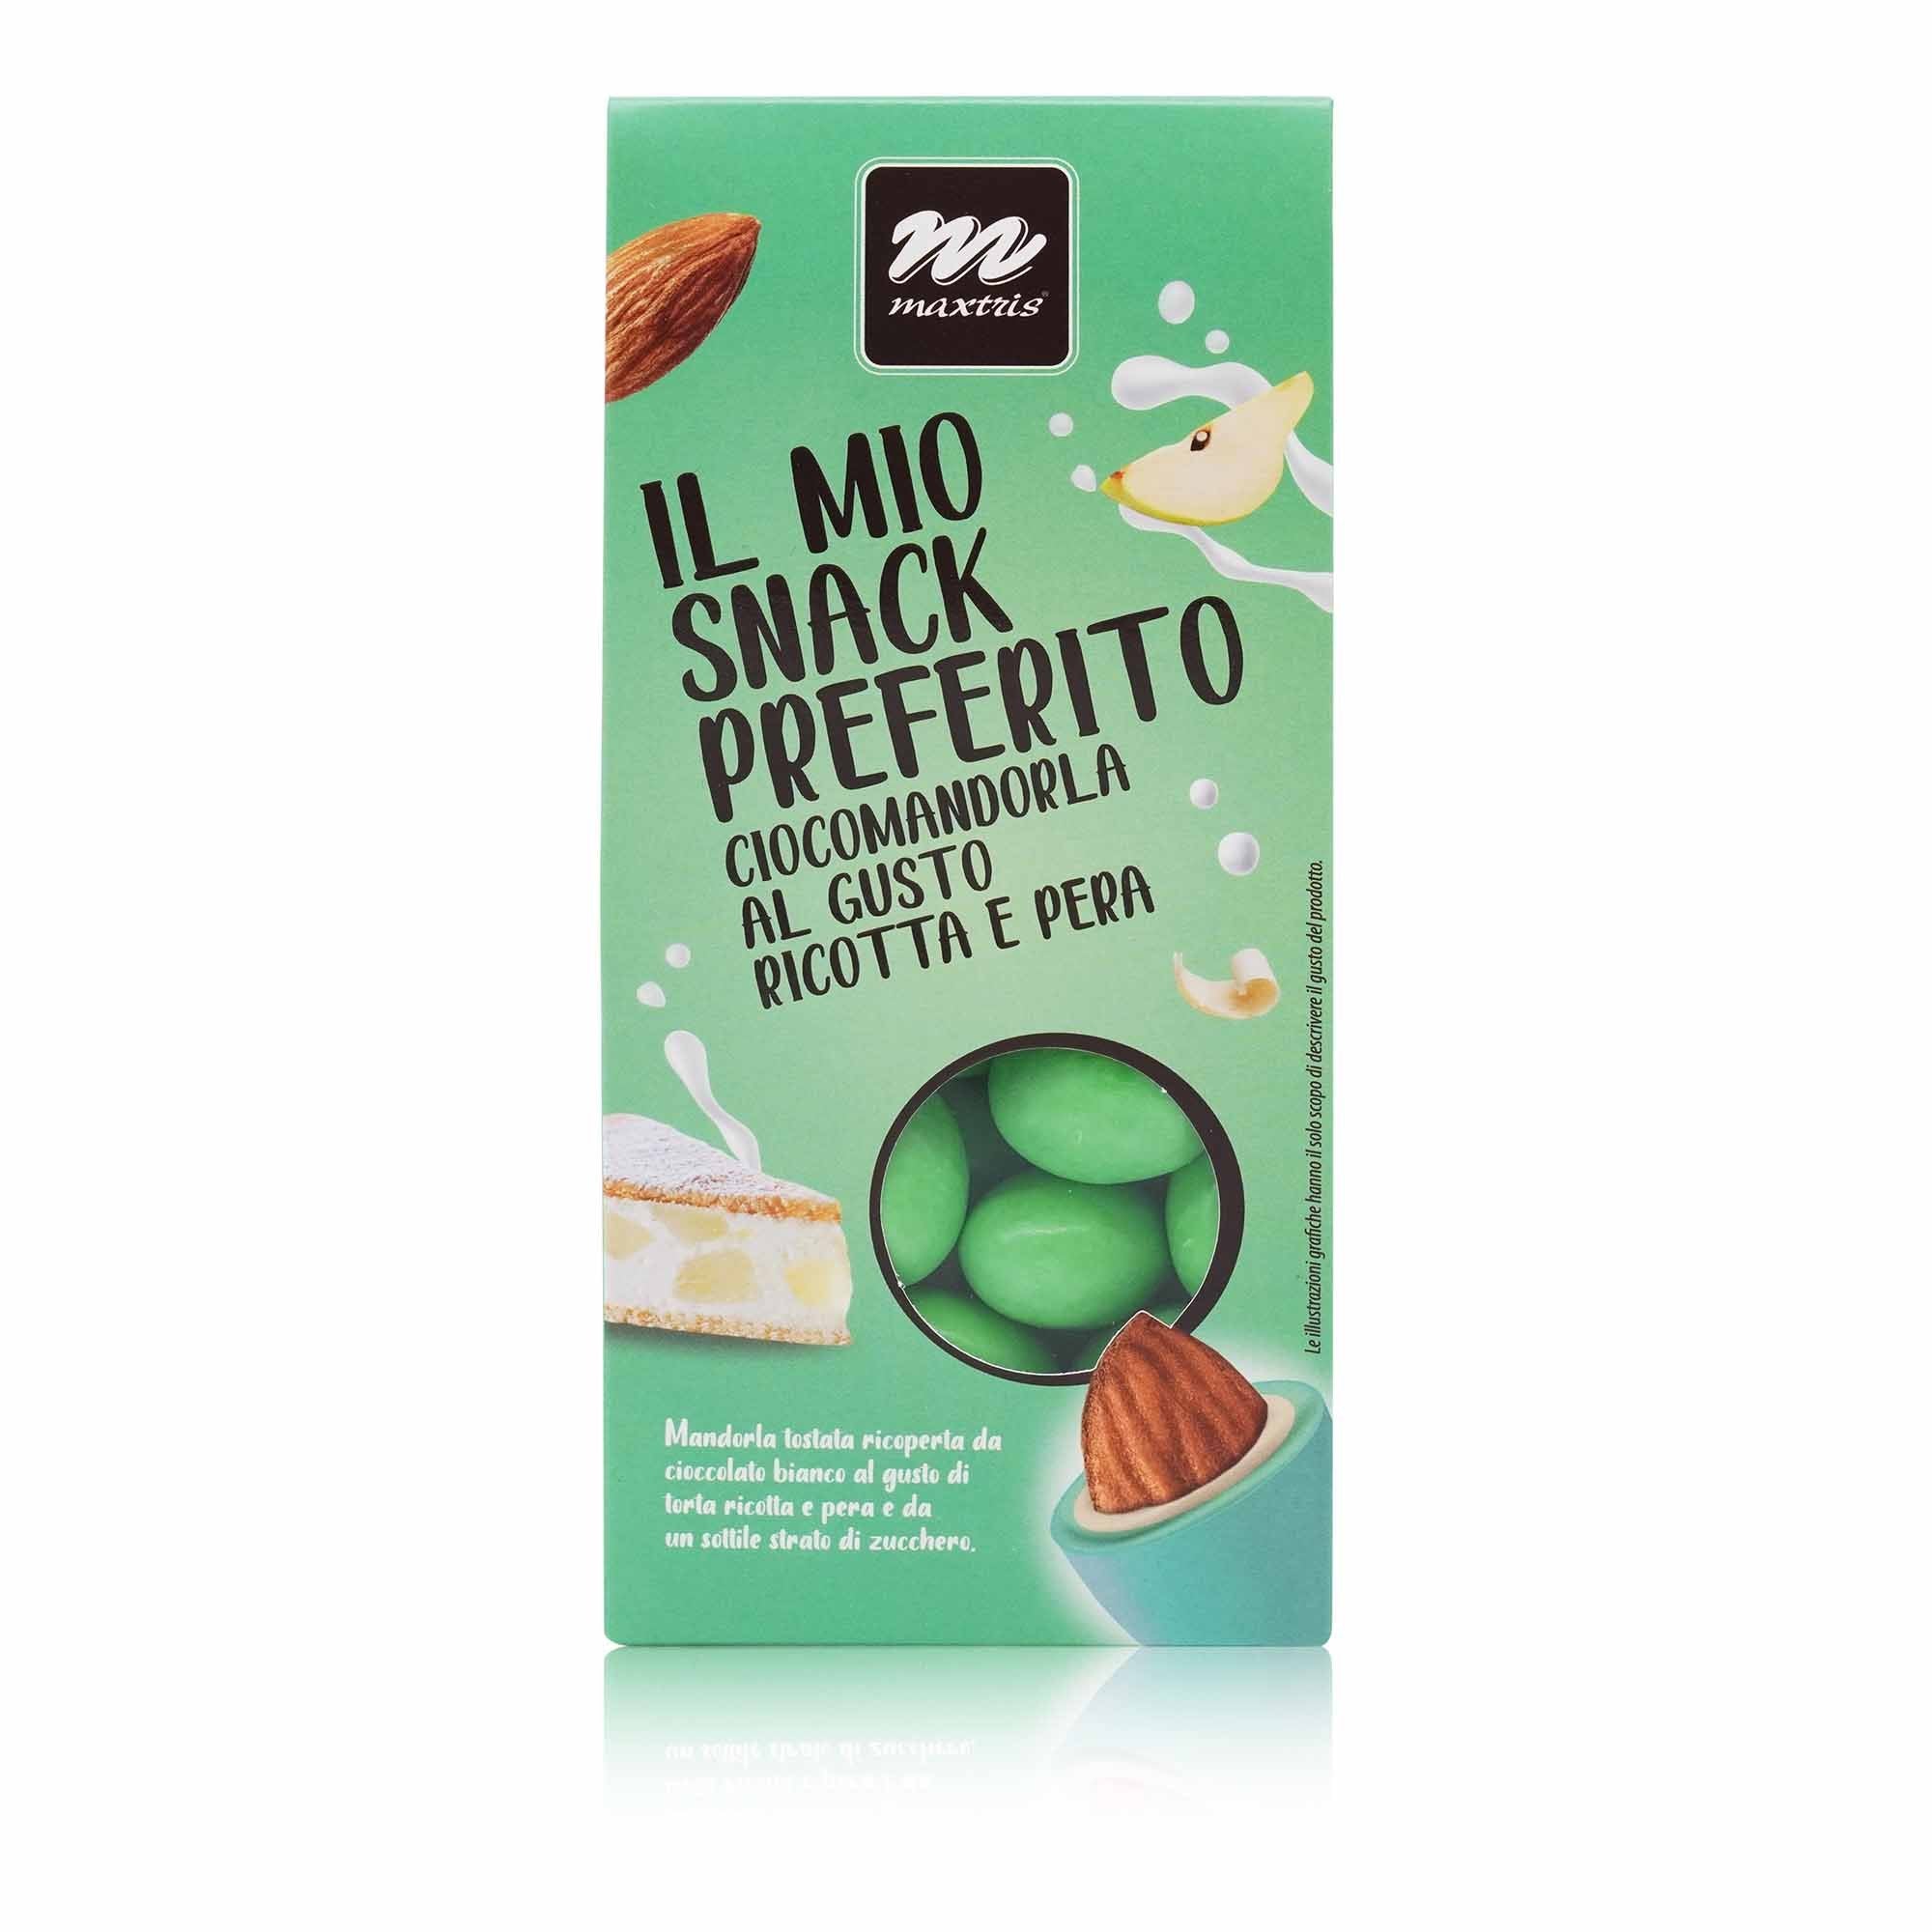 MAXTRIS Confetti Ciocomandorla Ricotta e Pera – Mandelkonfetti Ricotta u.Birne - 0,150kg - italienisch-einkaufen.de